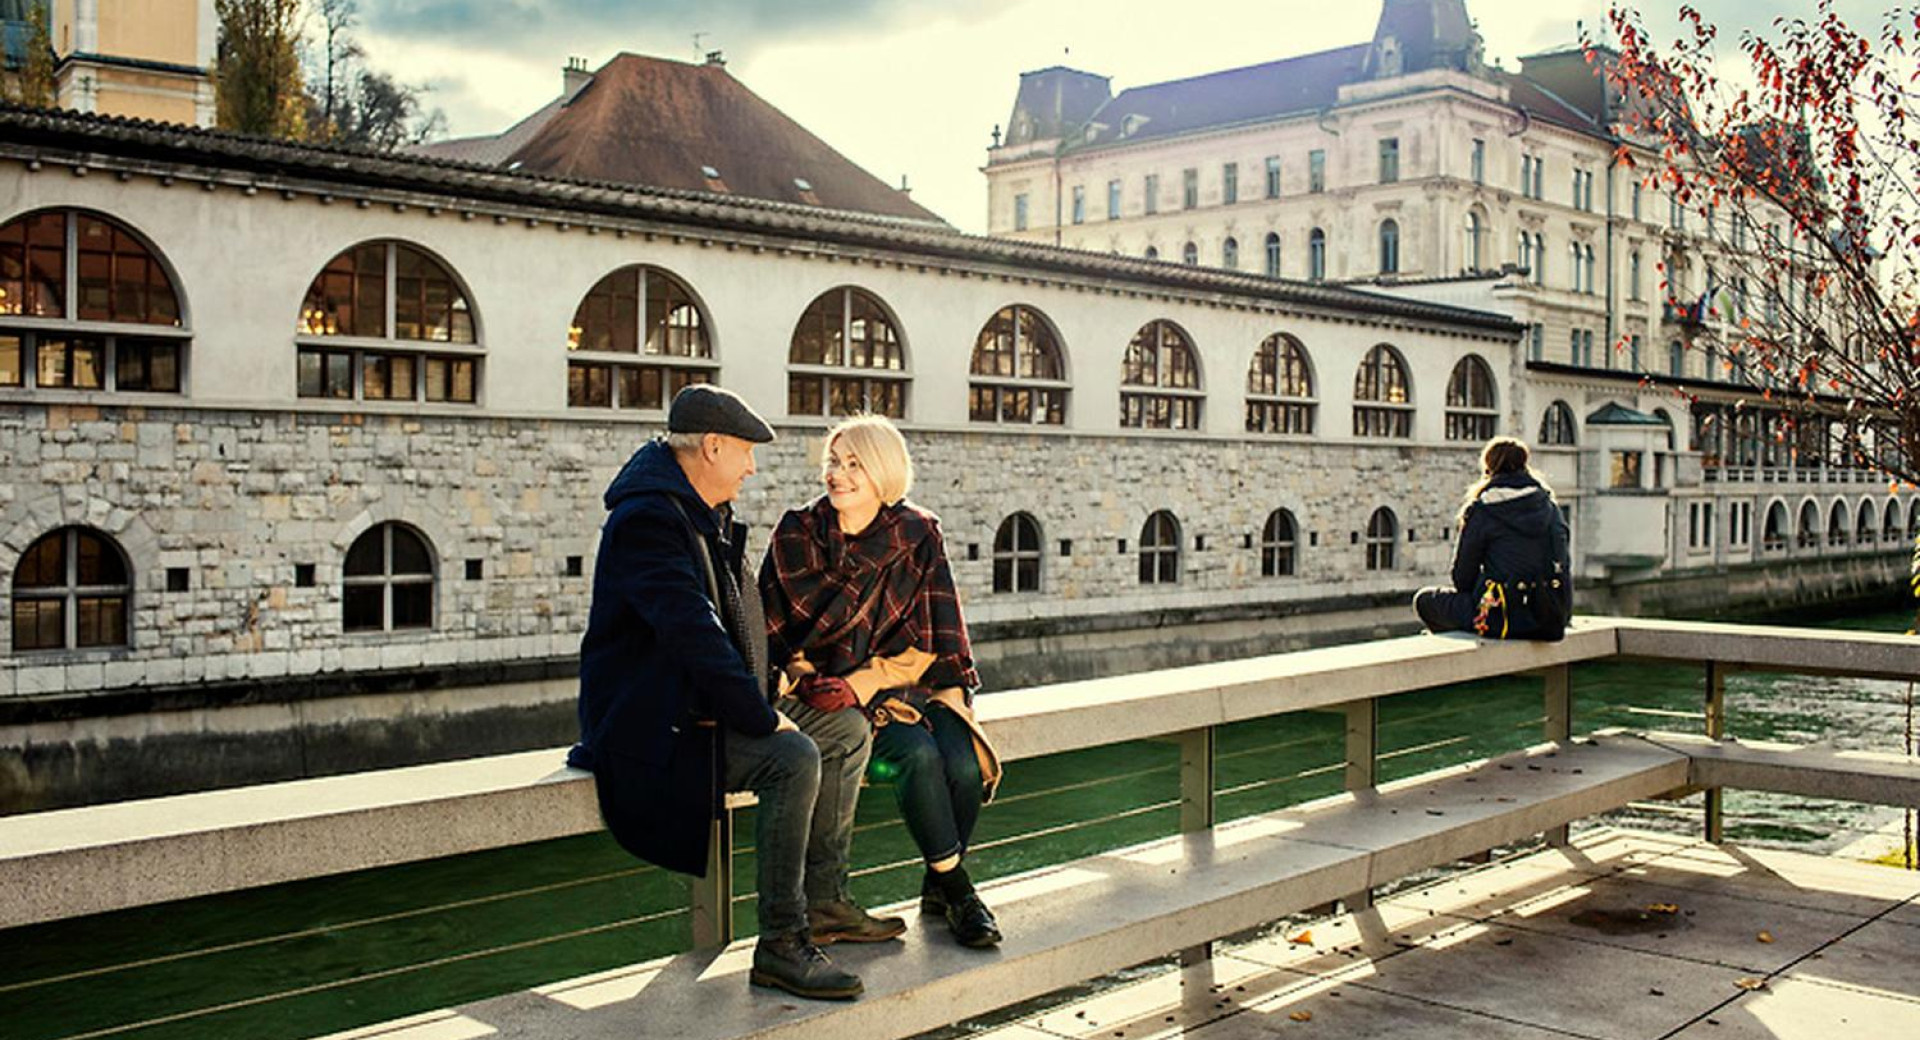 Par sedi na klopci ob Ljubljanici. V ozadju Plečnikove tržnice.